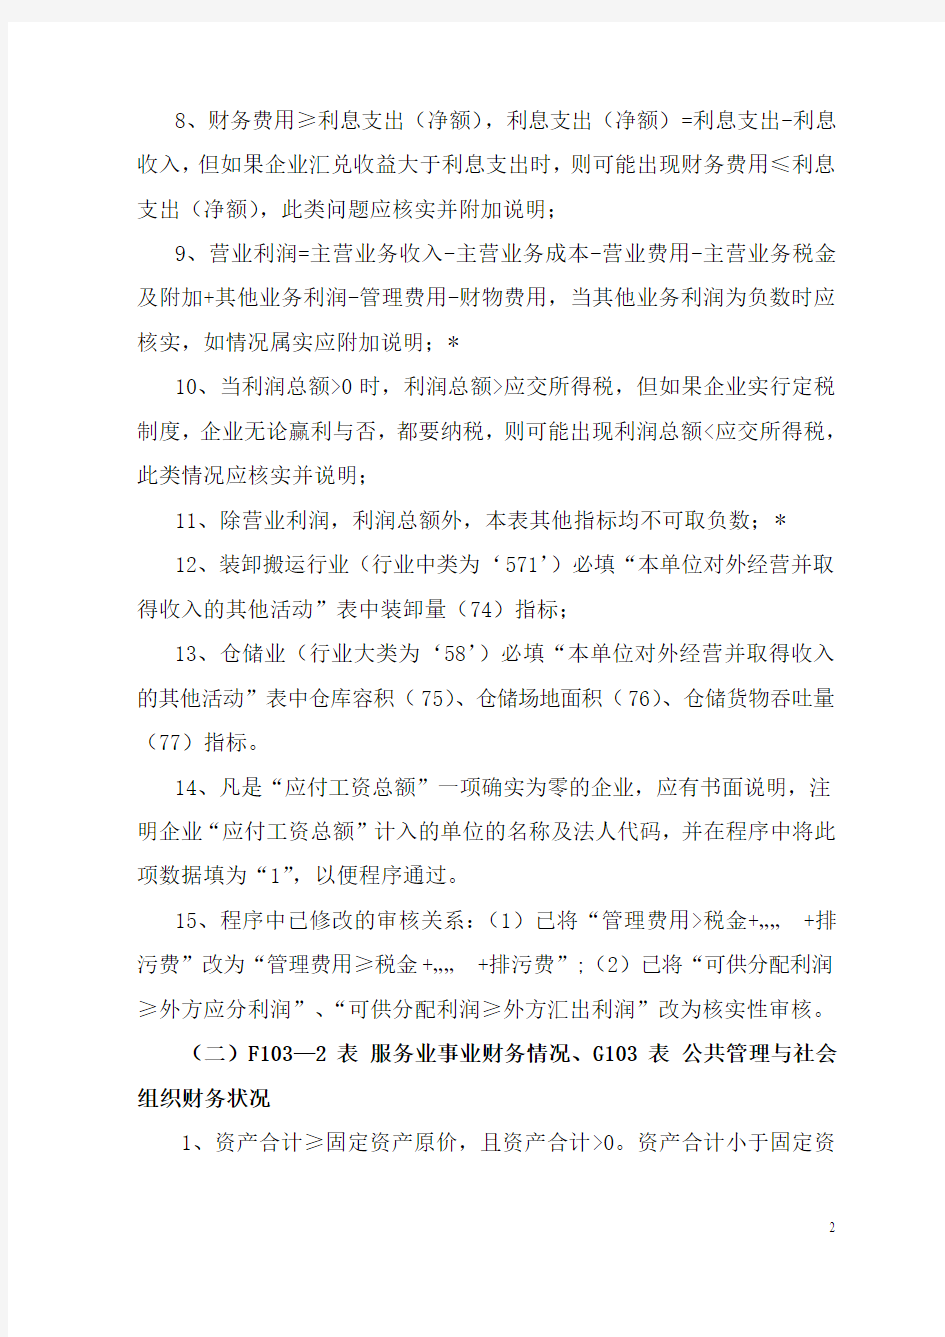 北京市经济普查《服务业》,《公共管理与社会组织》册普查数据审核要点